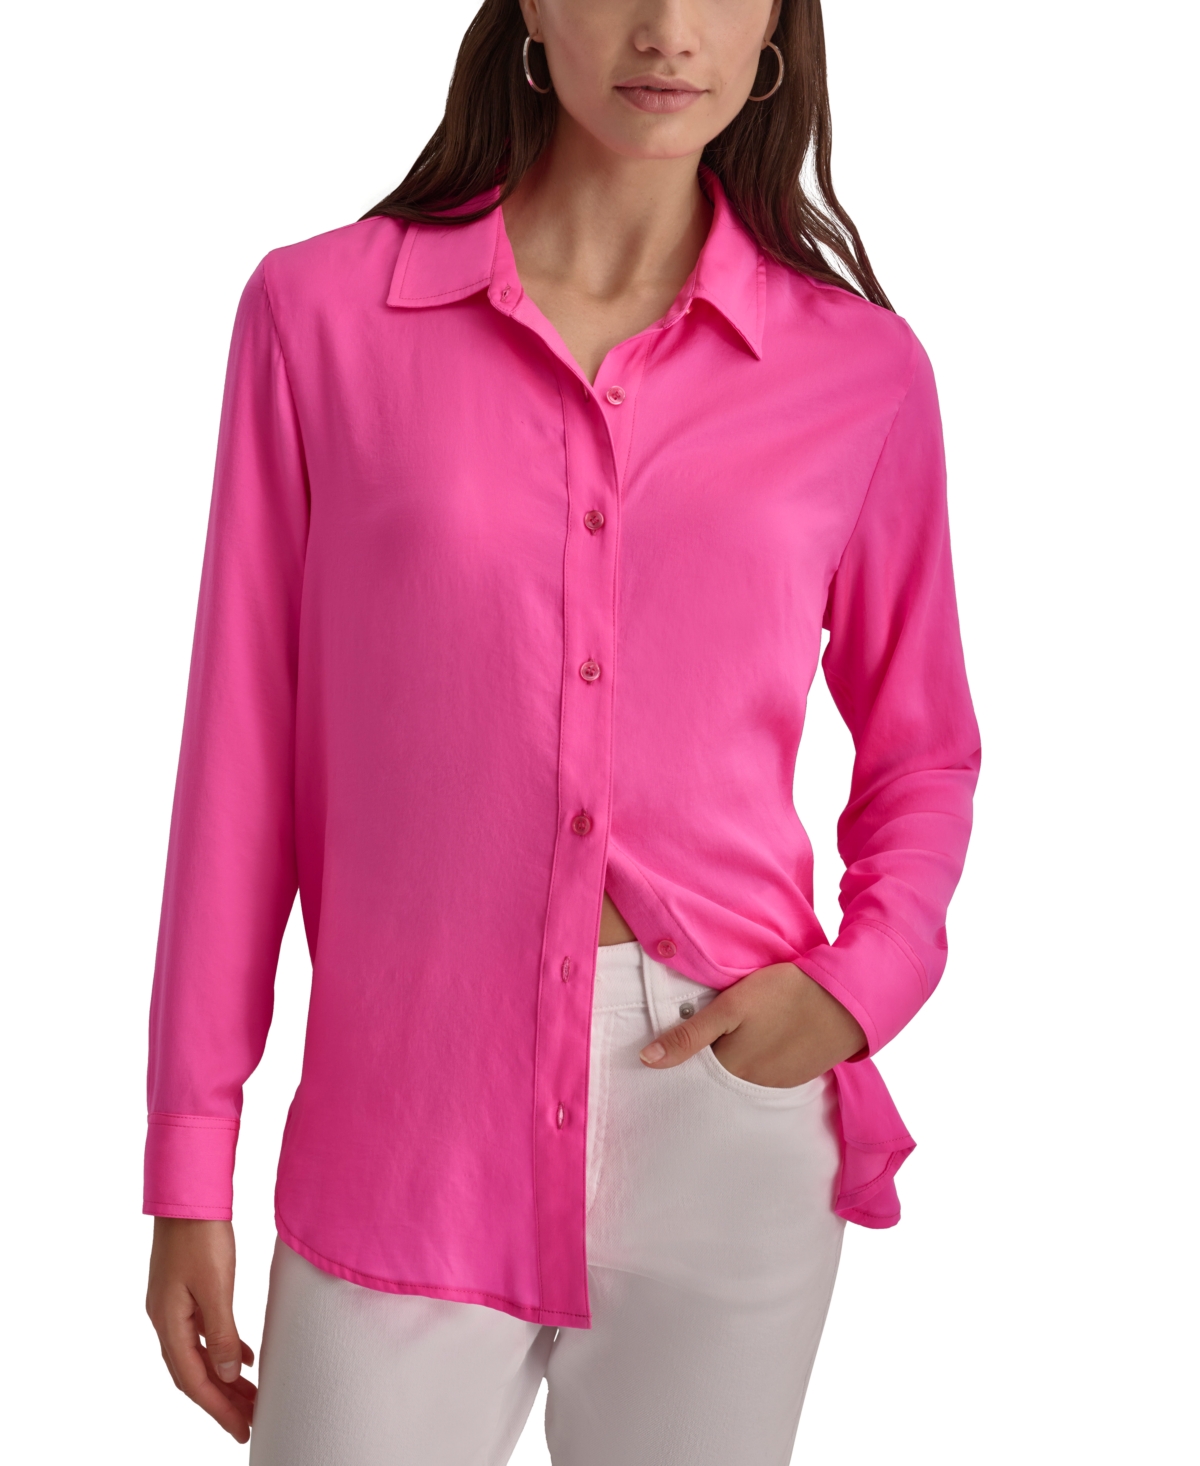 Women's Collared Long-Sleeve Blouse - Shocking Pink